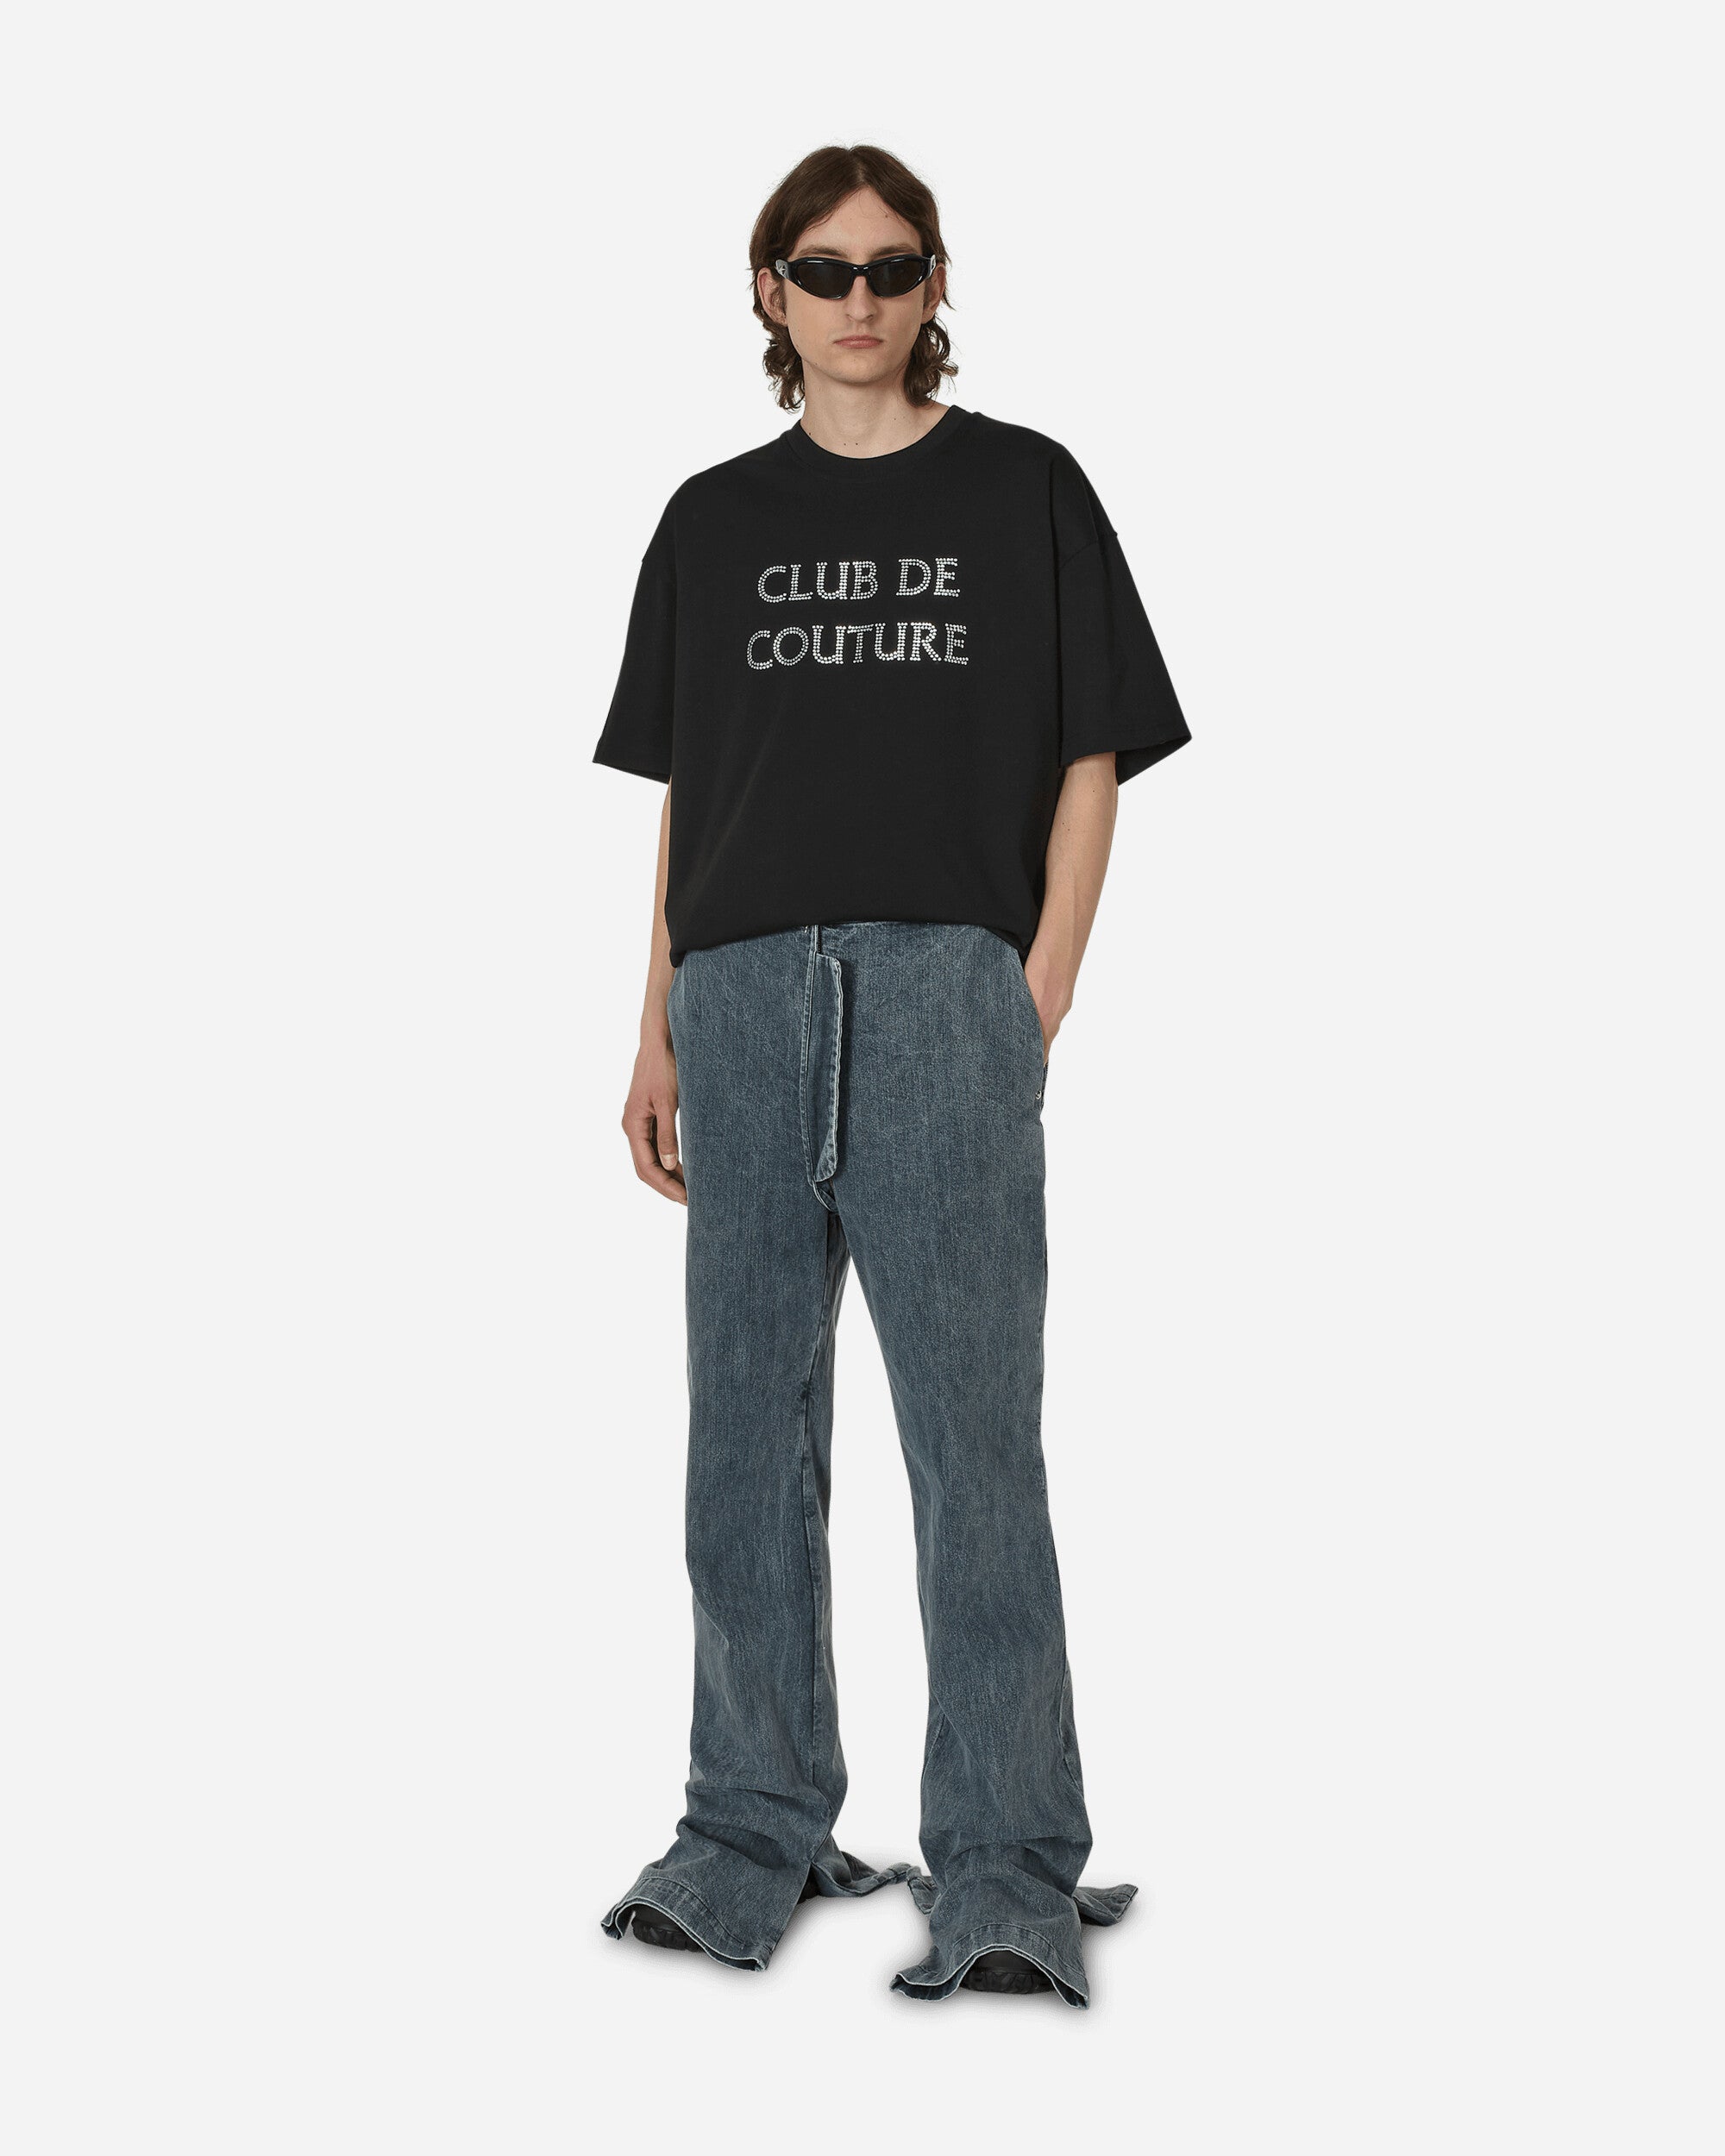 Club De Couture T-Shirt Black